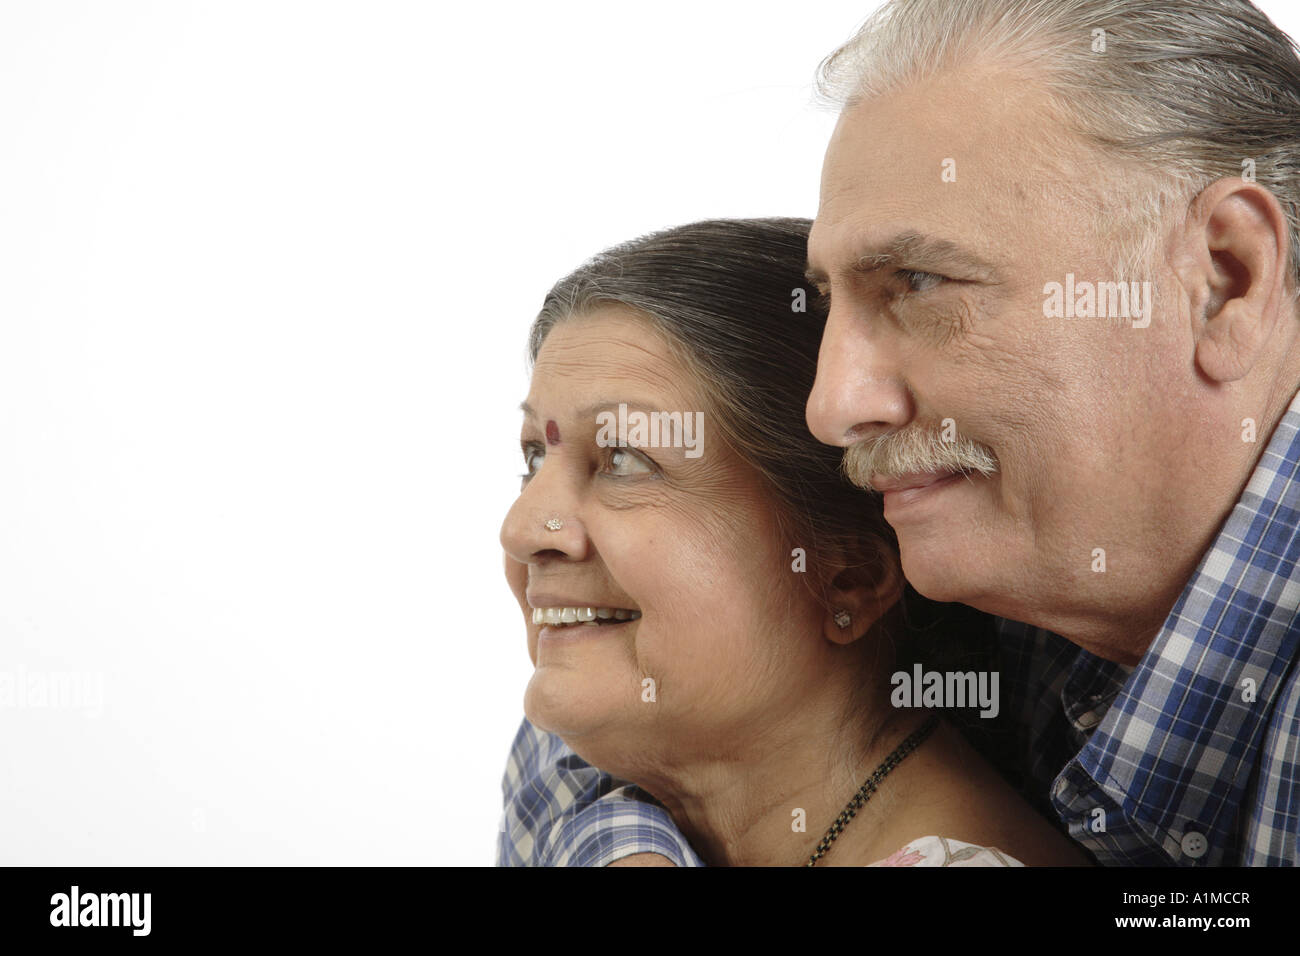 Indian senior citizen giovane faccia laterale su sfondo bianco Foto Stock